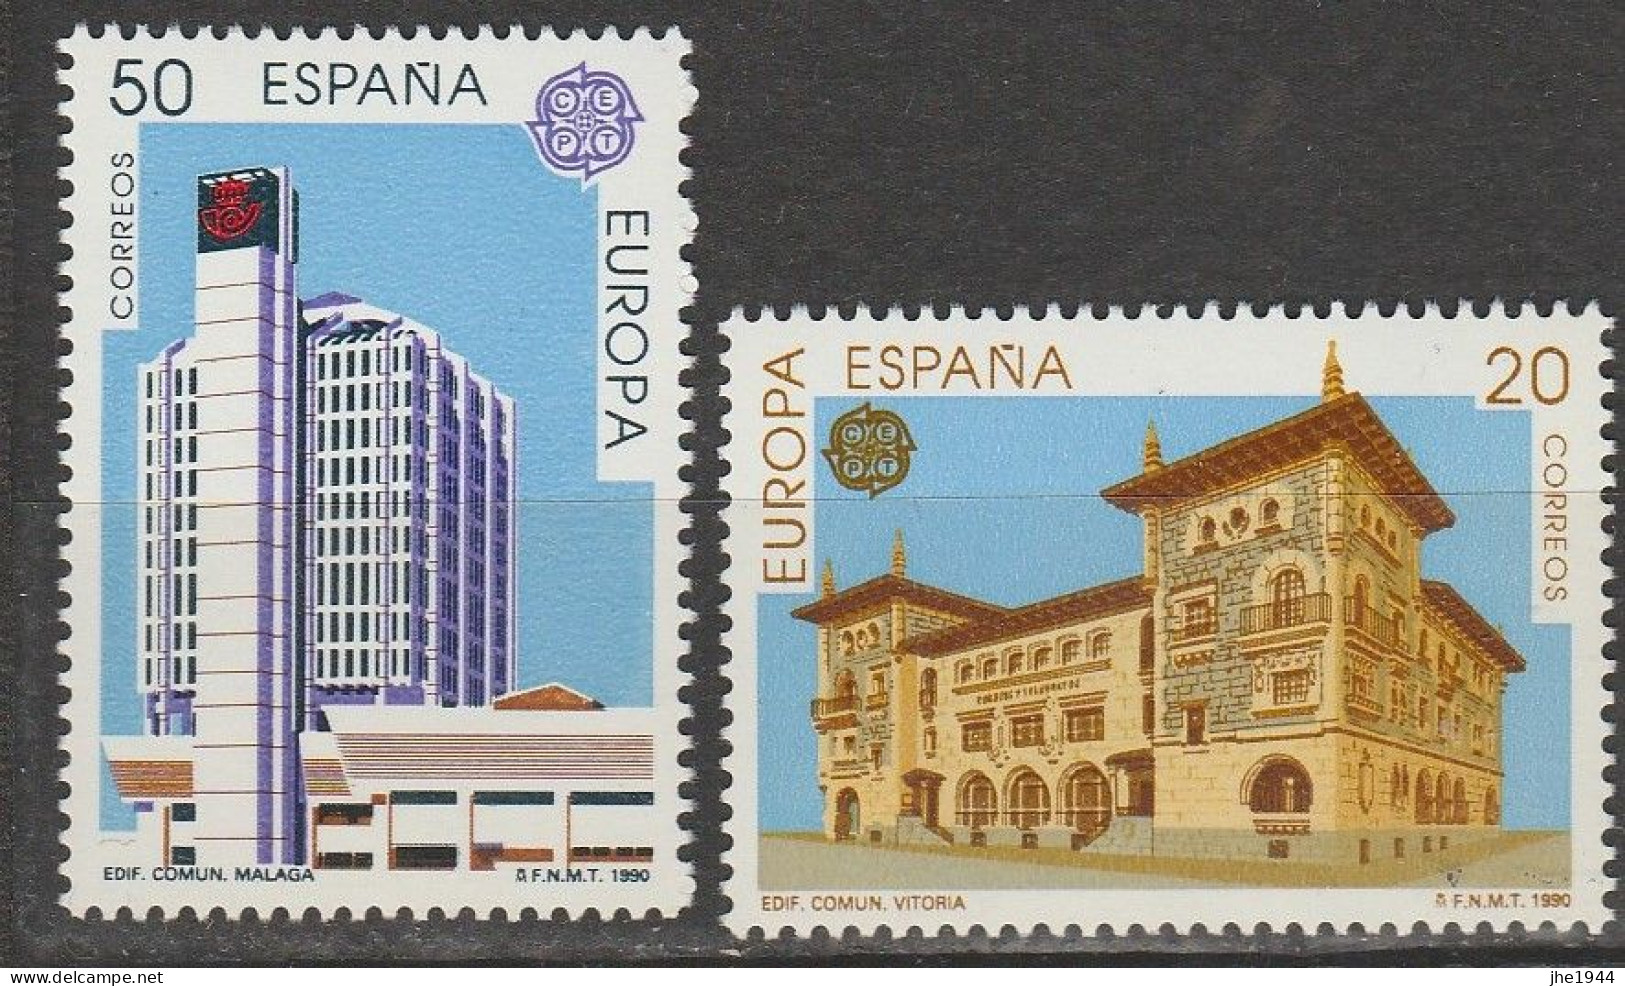 Europa 1990 Etablissements postaux Voir liste des timbres à vendre **